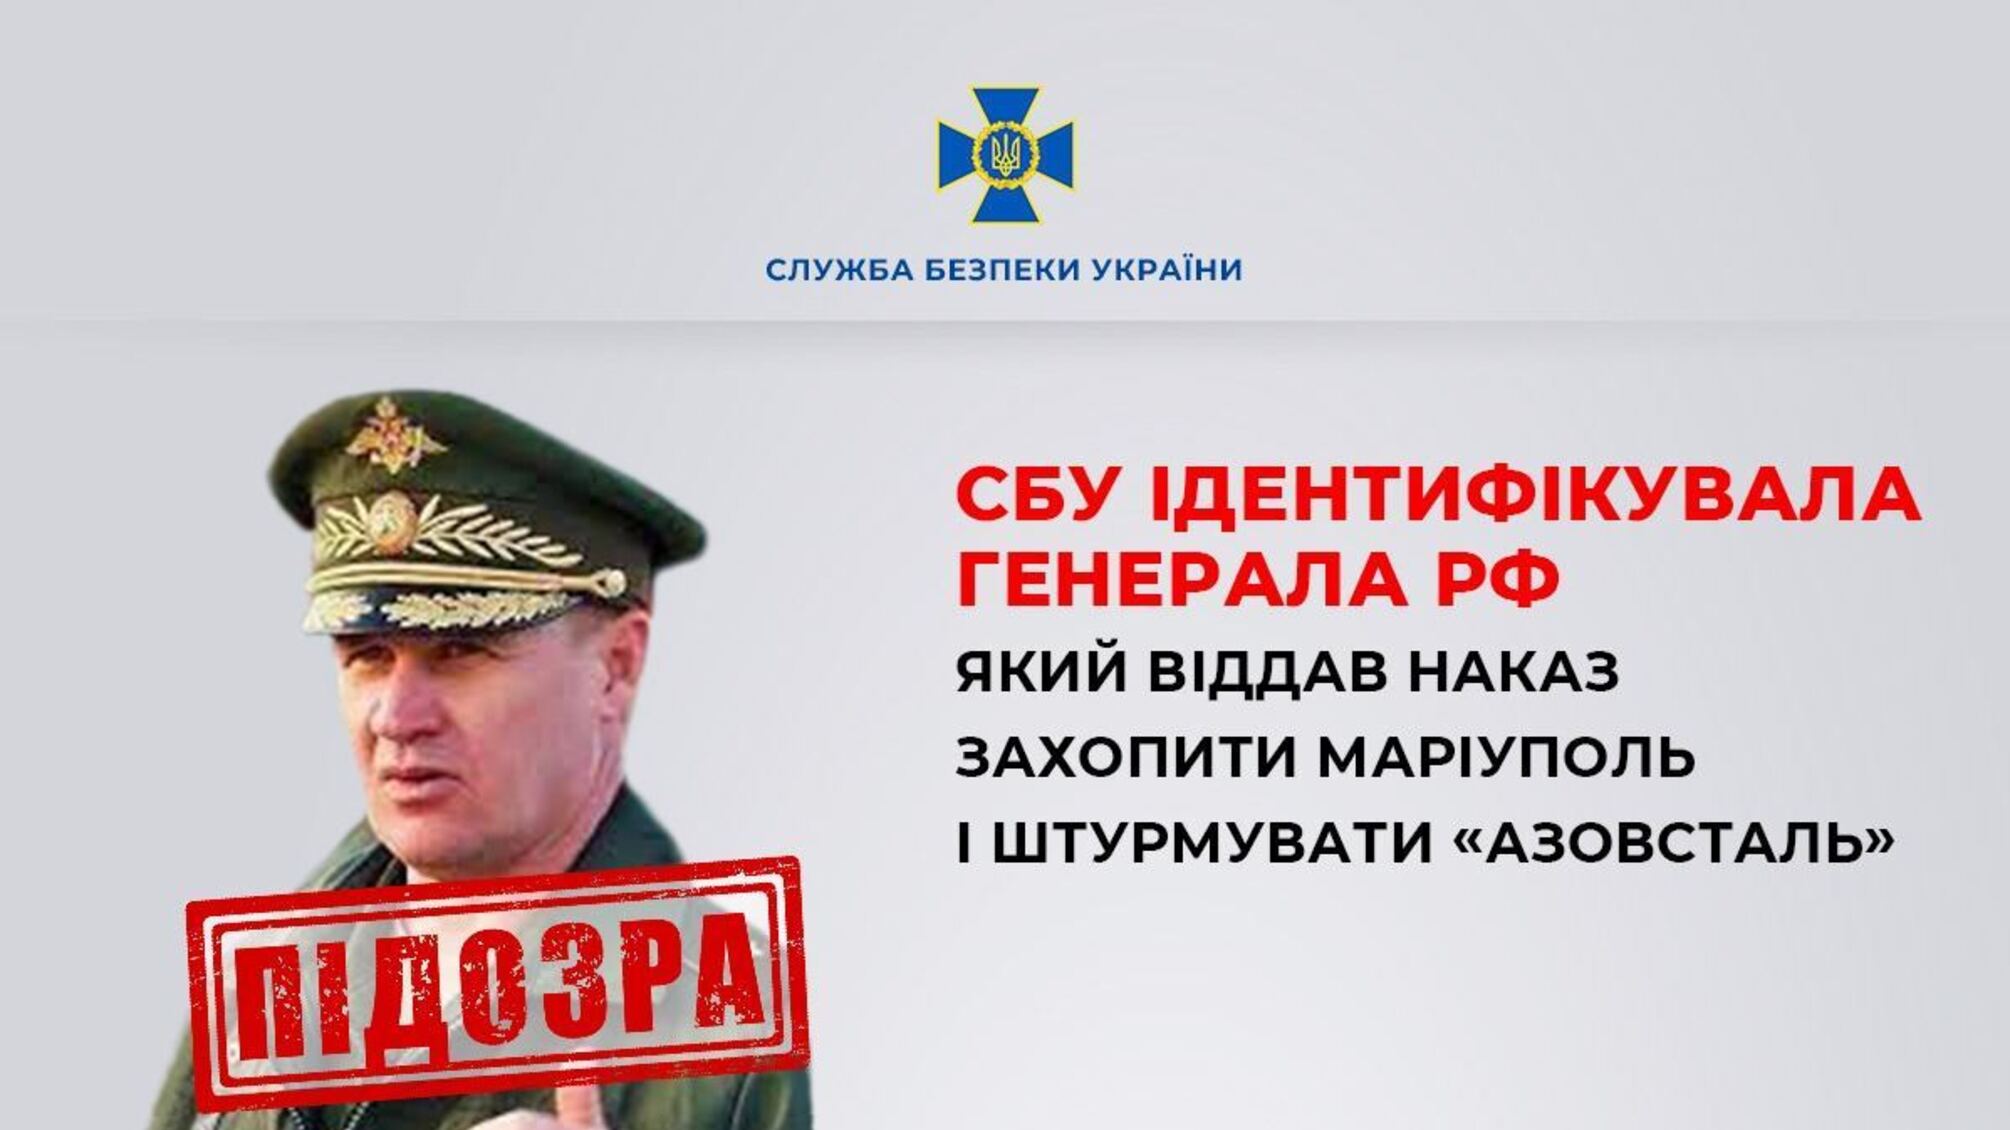 СБУ идентифицировала генерала рф, который уничтожил Мариуполь и командовал штурмом 'Азовстали'